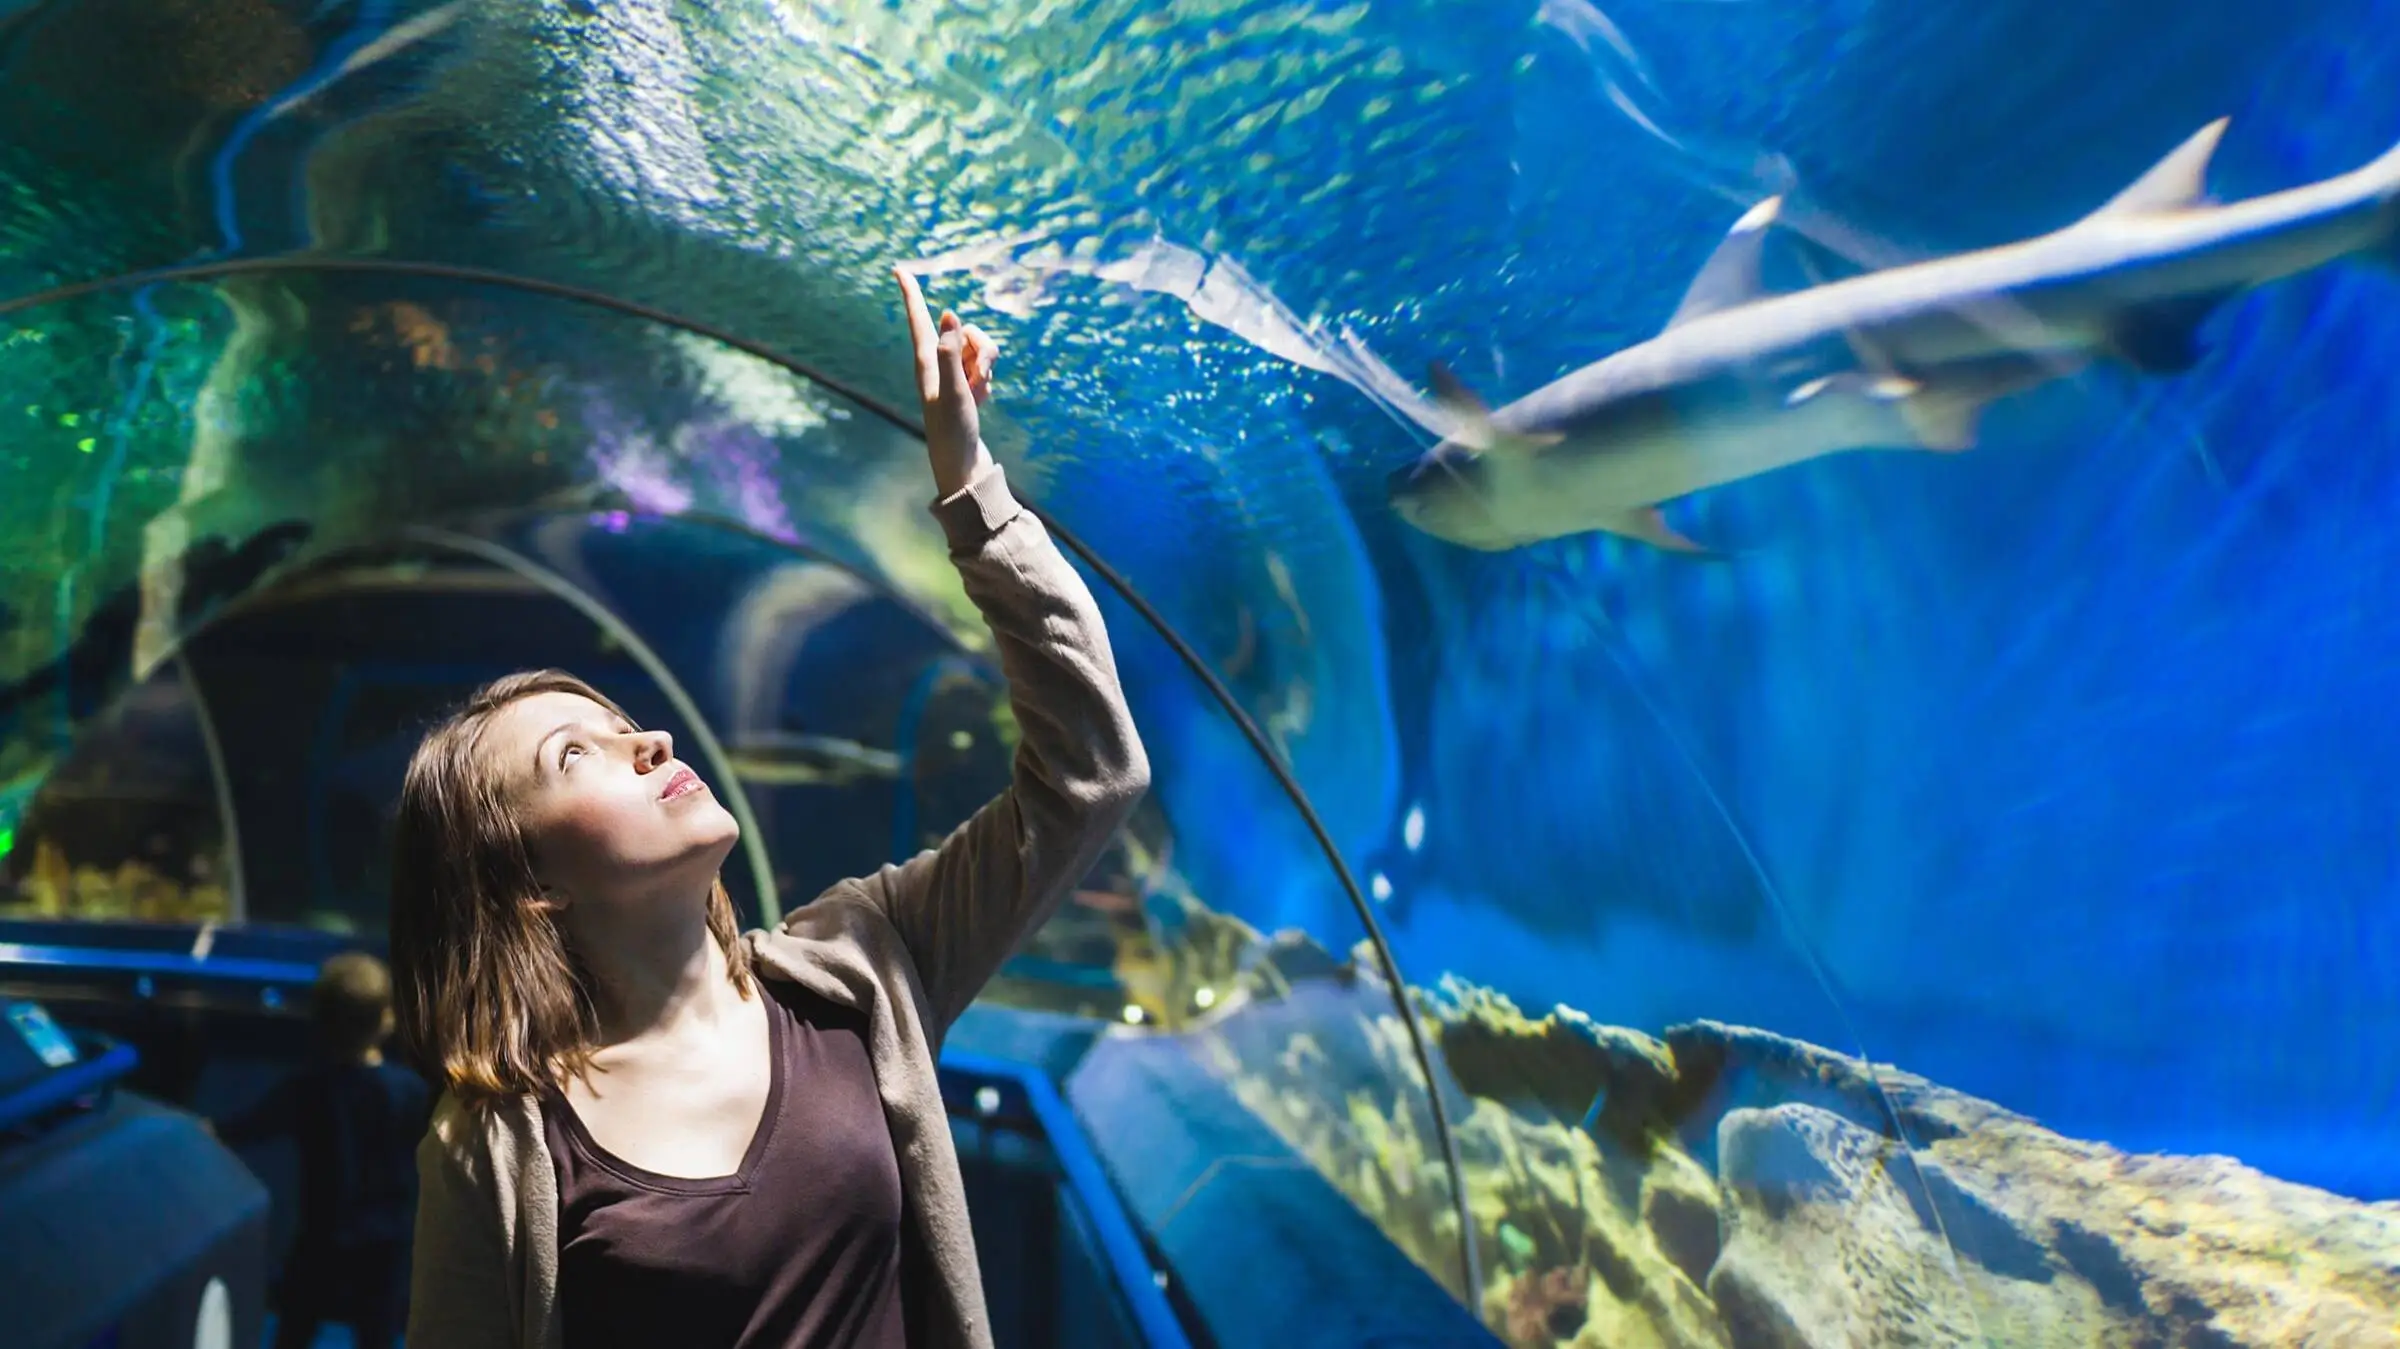 Frau steht unter einer Aquariumröhre über ihr schwimmt ein Hai